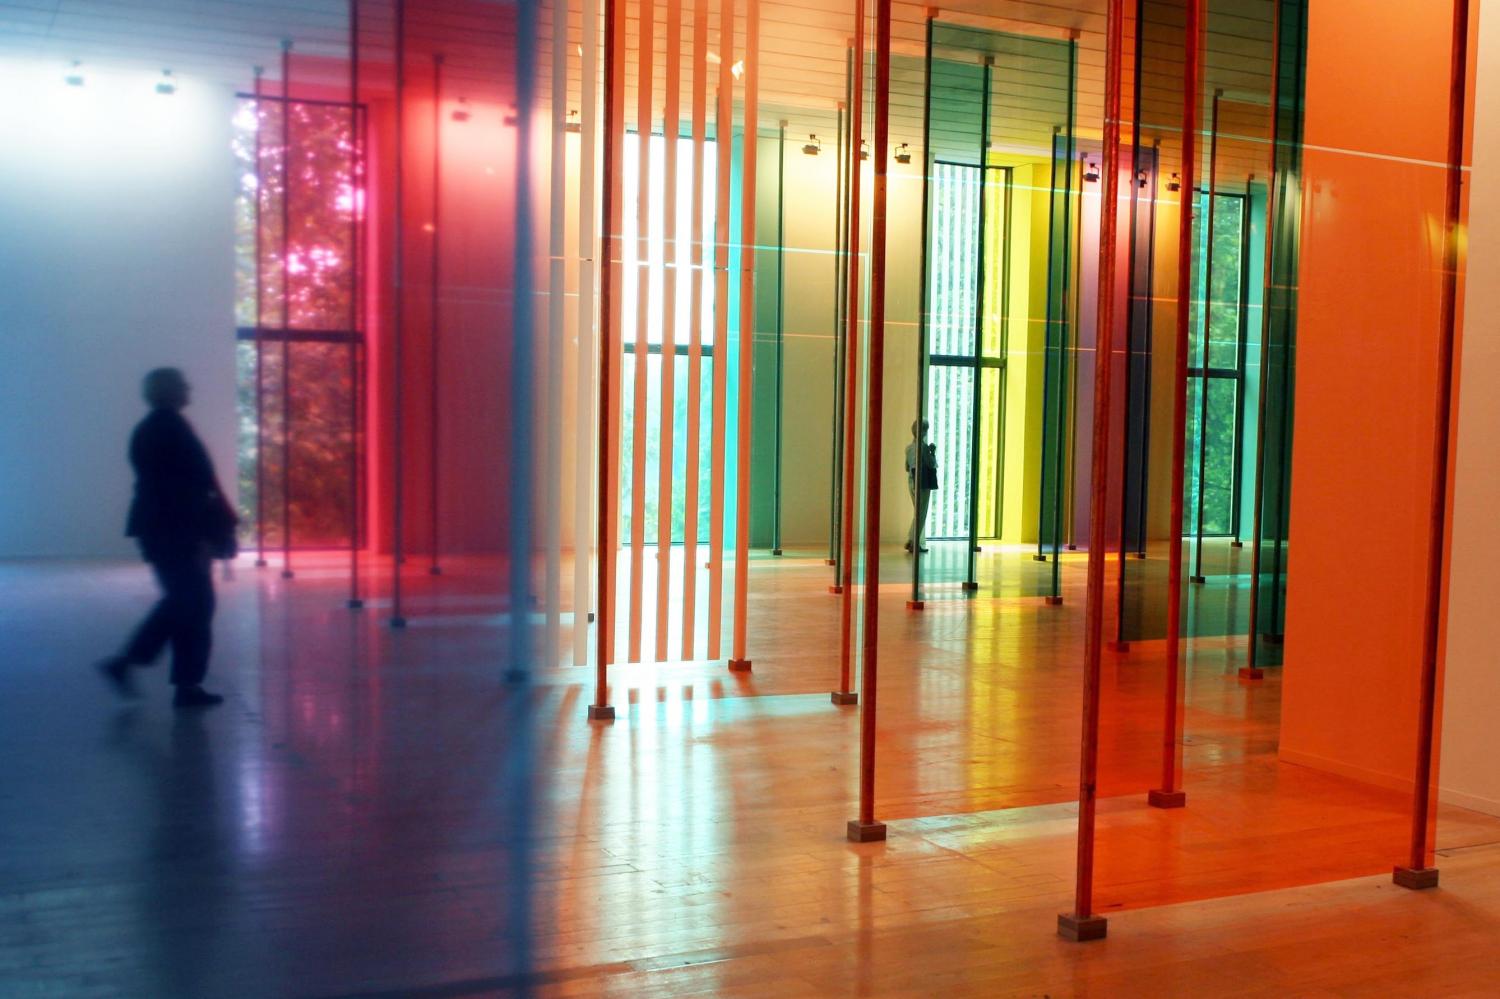 [8e Biennale d'art contemporain de Lyon (2005). La salle Daniel Buren au Musée d'art contemporain]